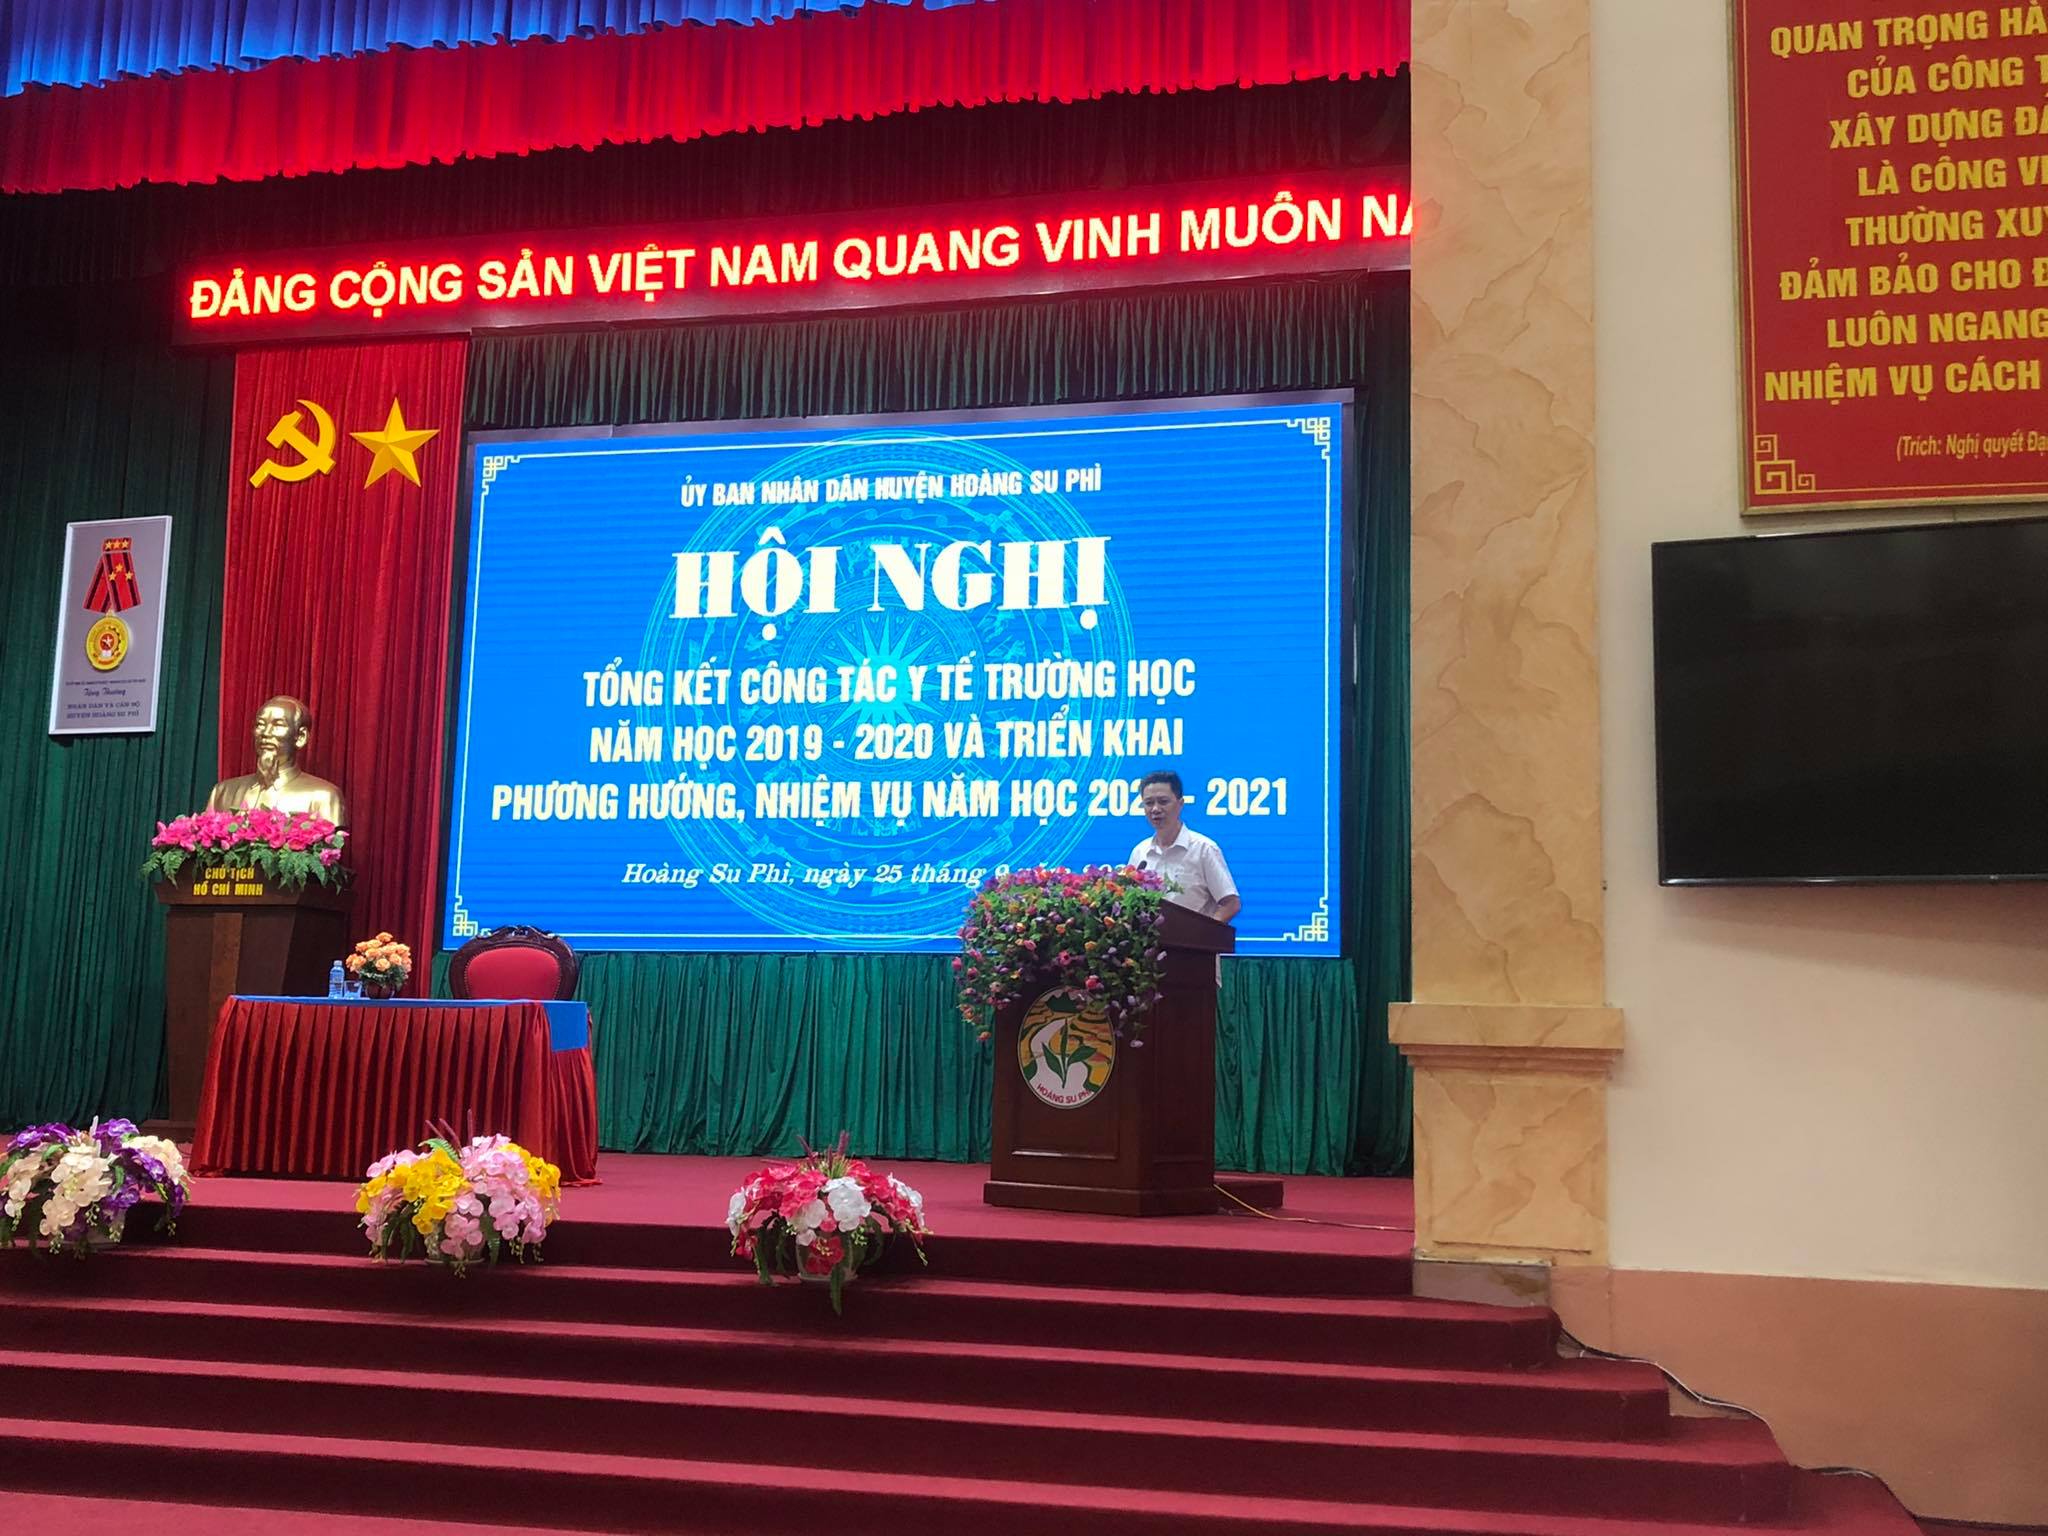 Hoàng Su Phì tổ chức hội nghị Tổng kết công tác Y tế trường học năm 2019 – 2020 và triển khai nhiệm vụ năm học 2020 – 2021